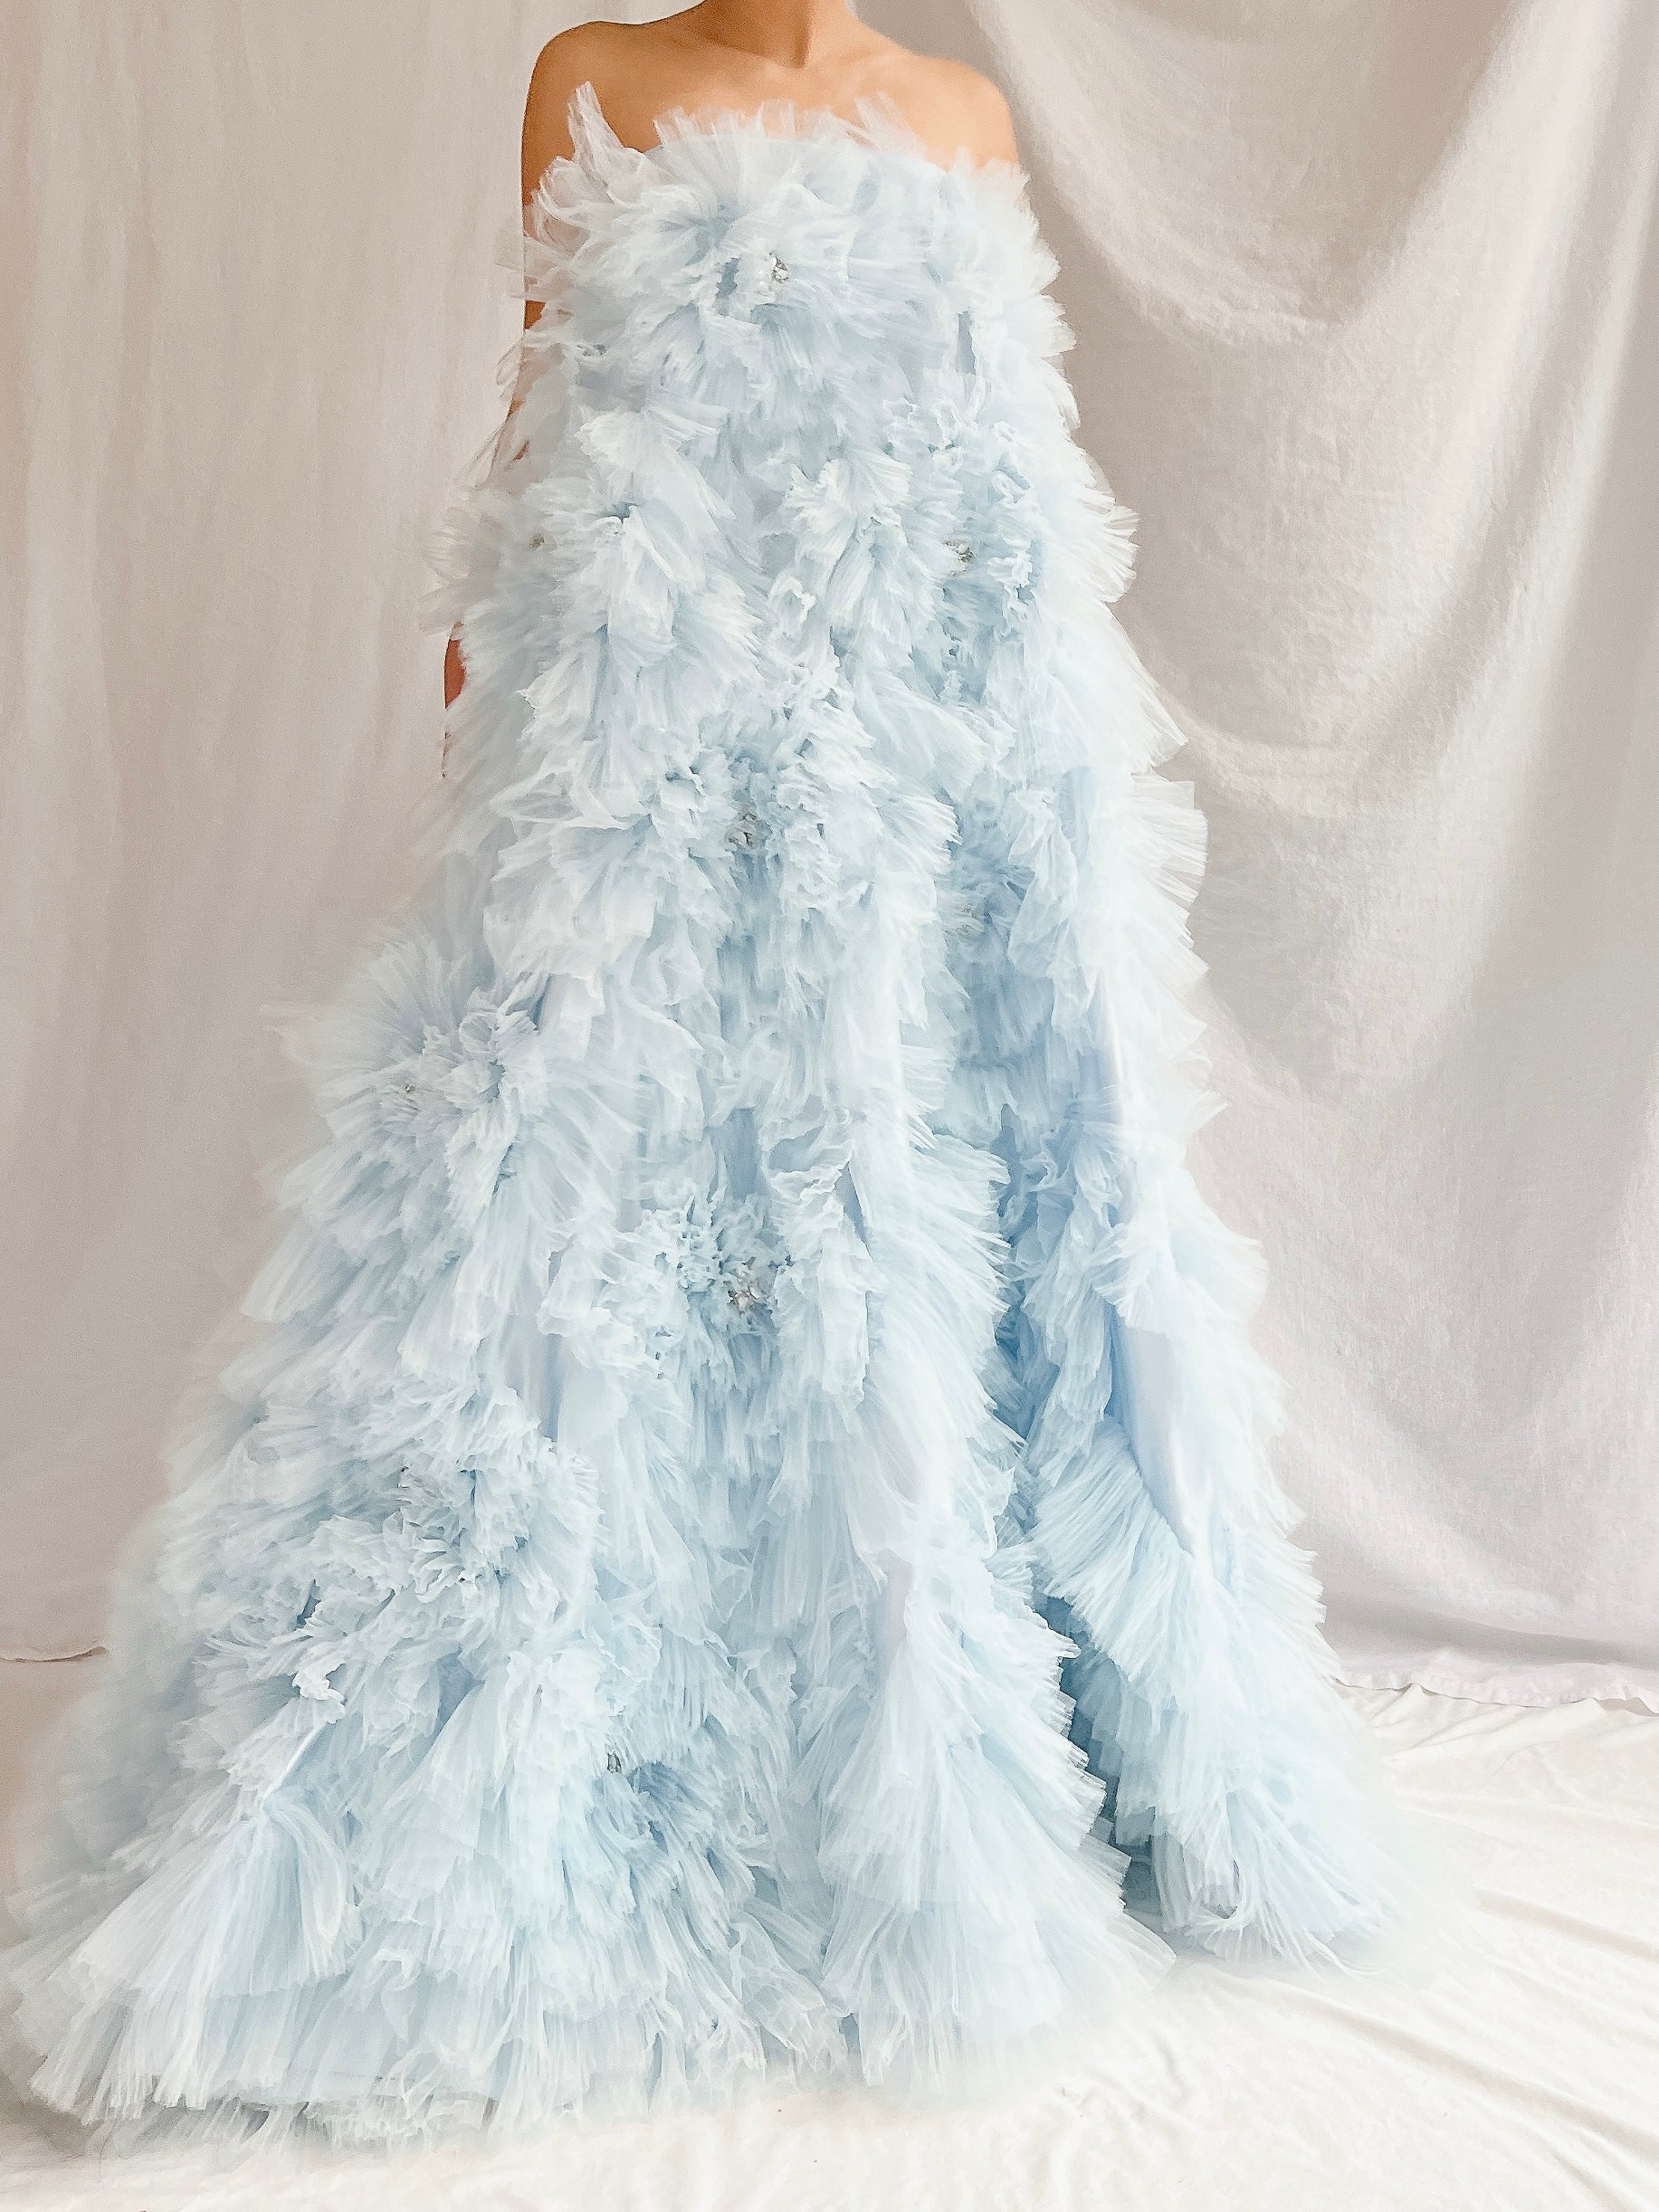 2000s Baby Blue Ruffle Dress/Skirt - XS-S